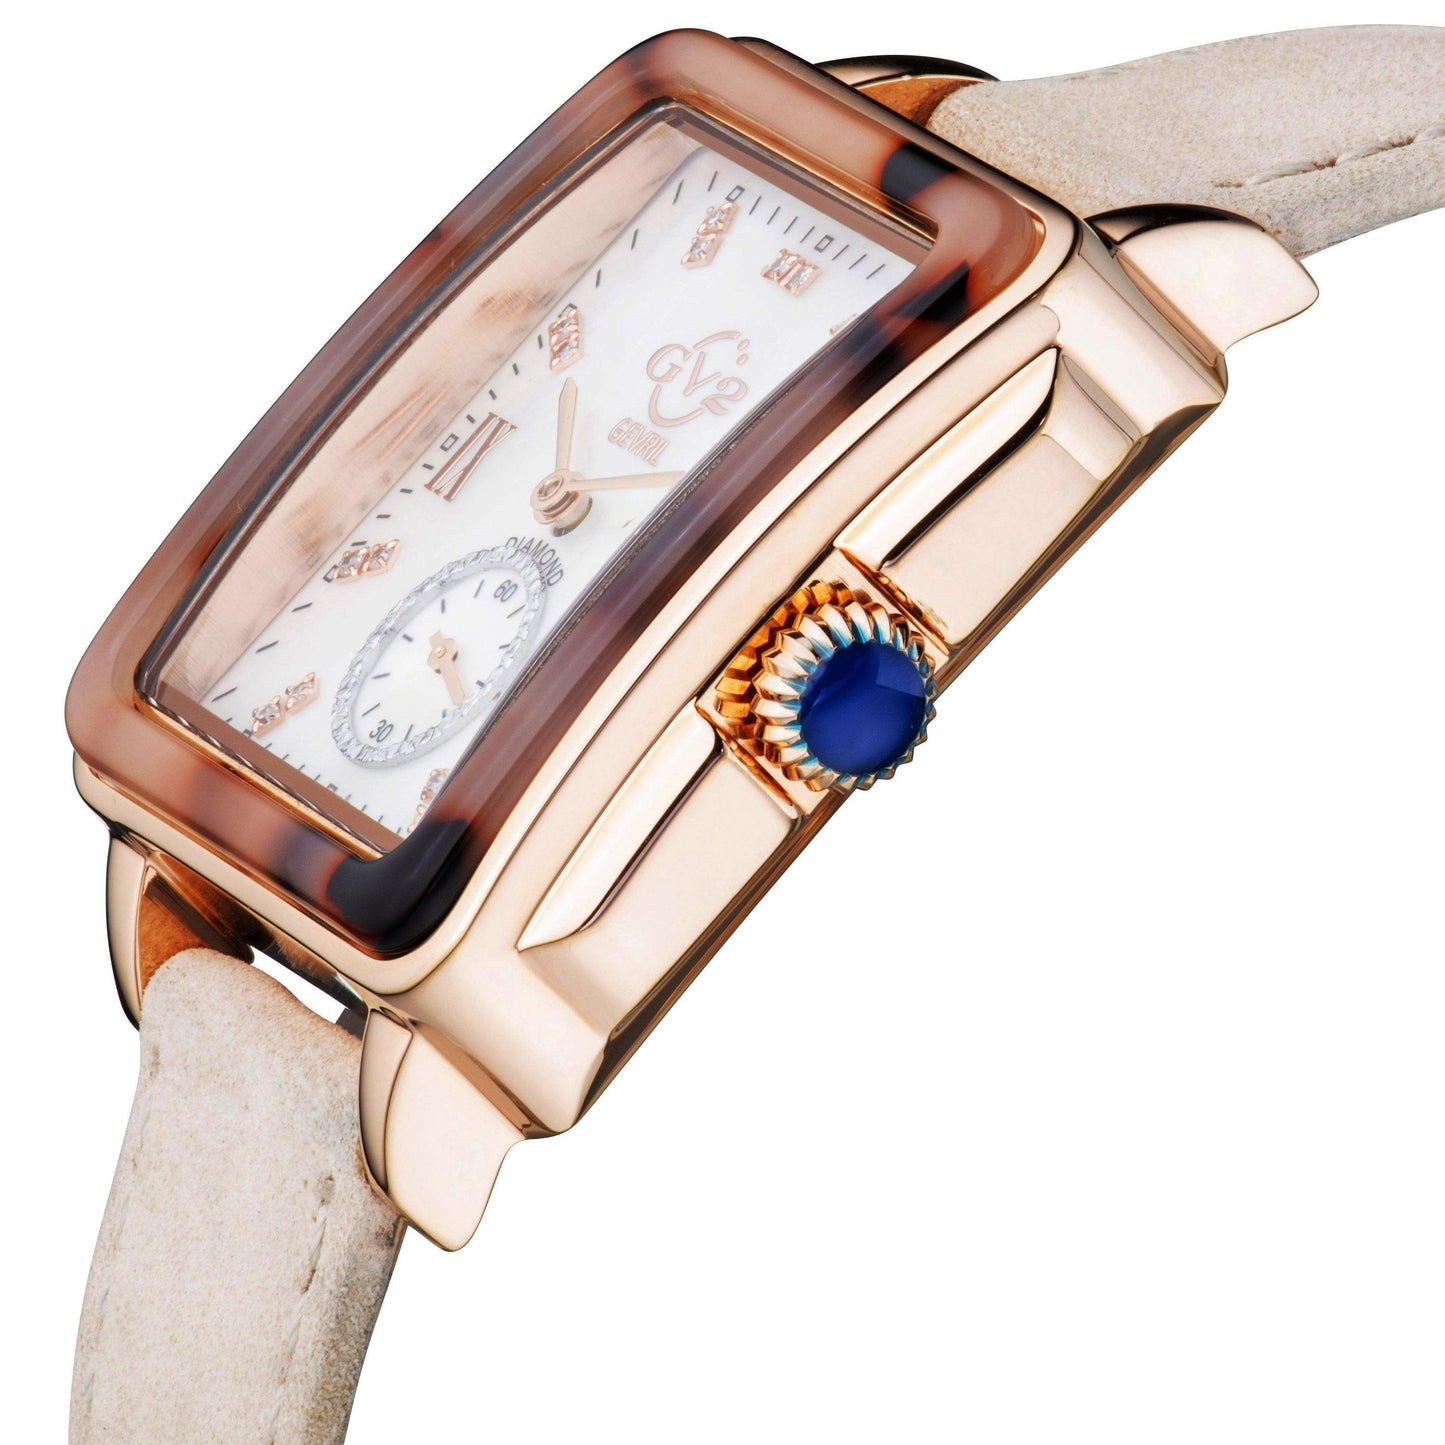 Gevril-Luxury-Swiss-Watches-GV2 Bari Tortoise Diamond-9242